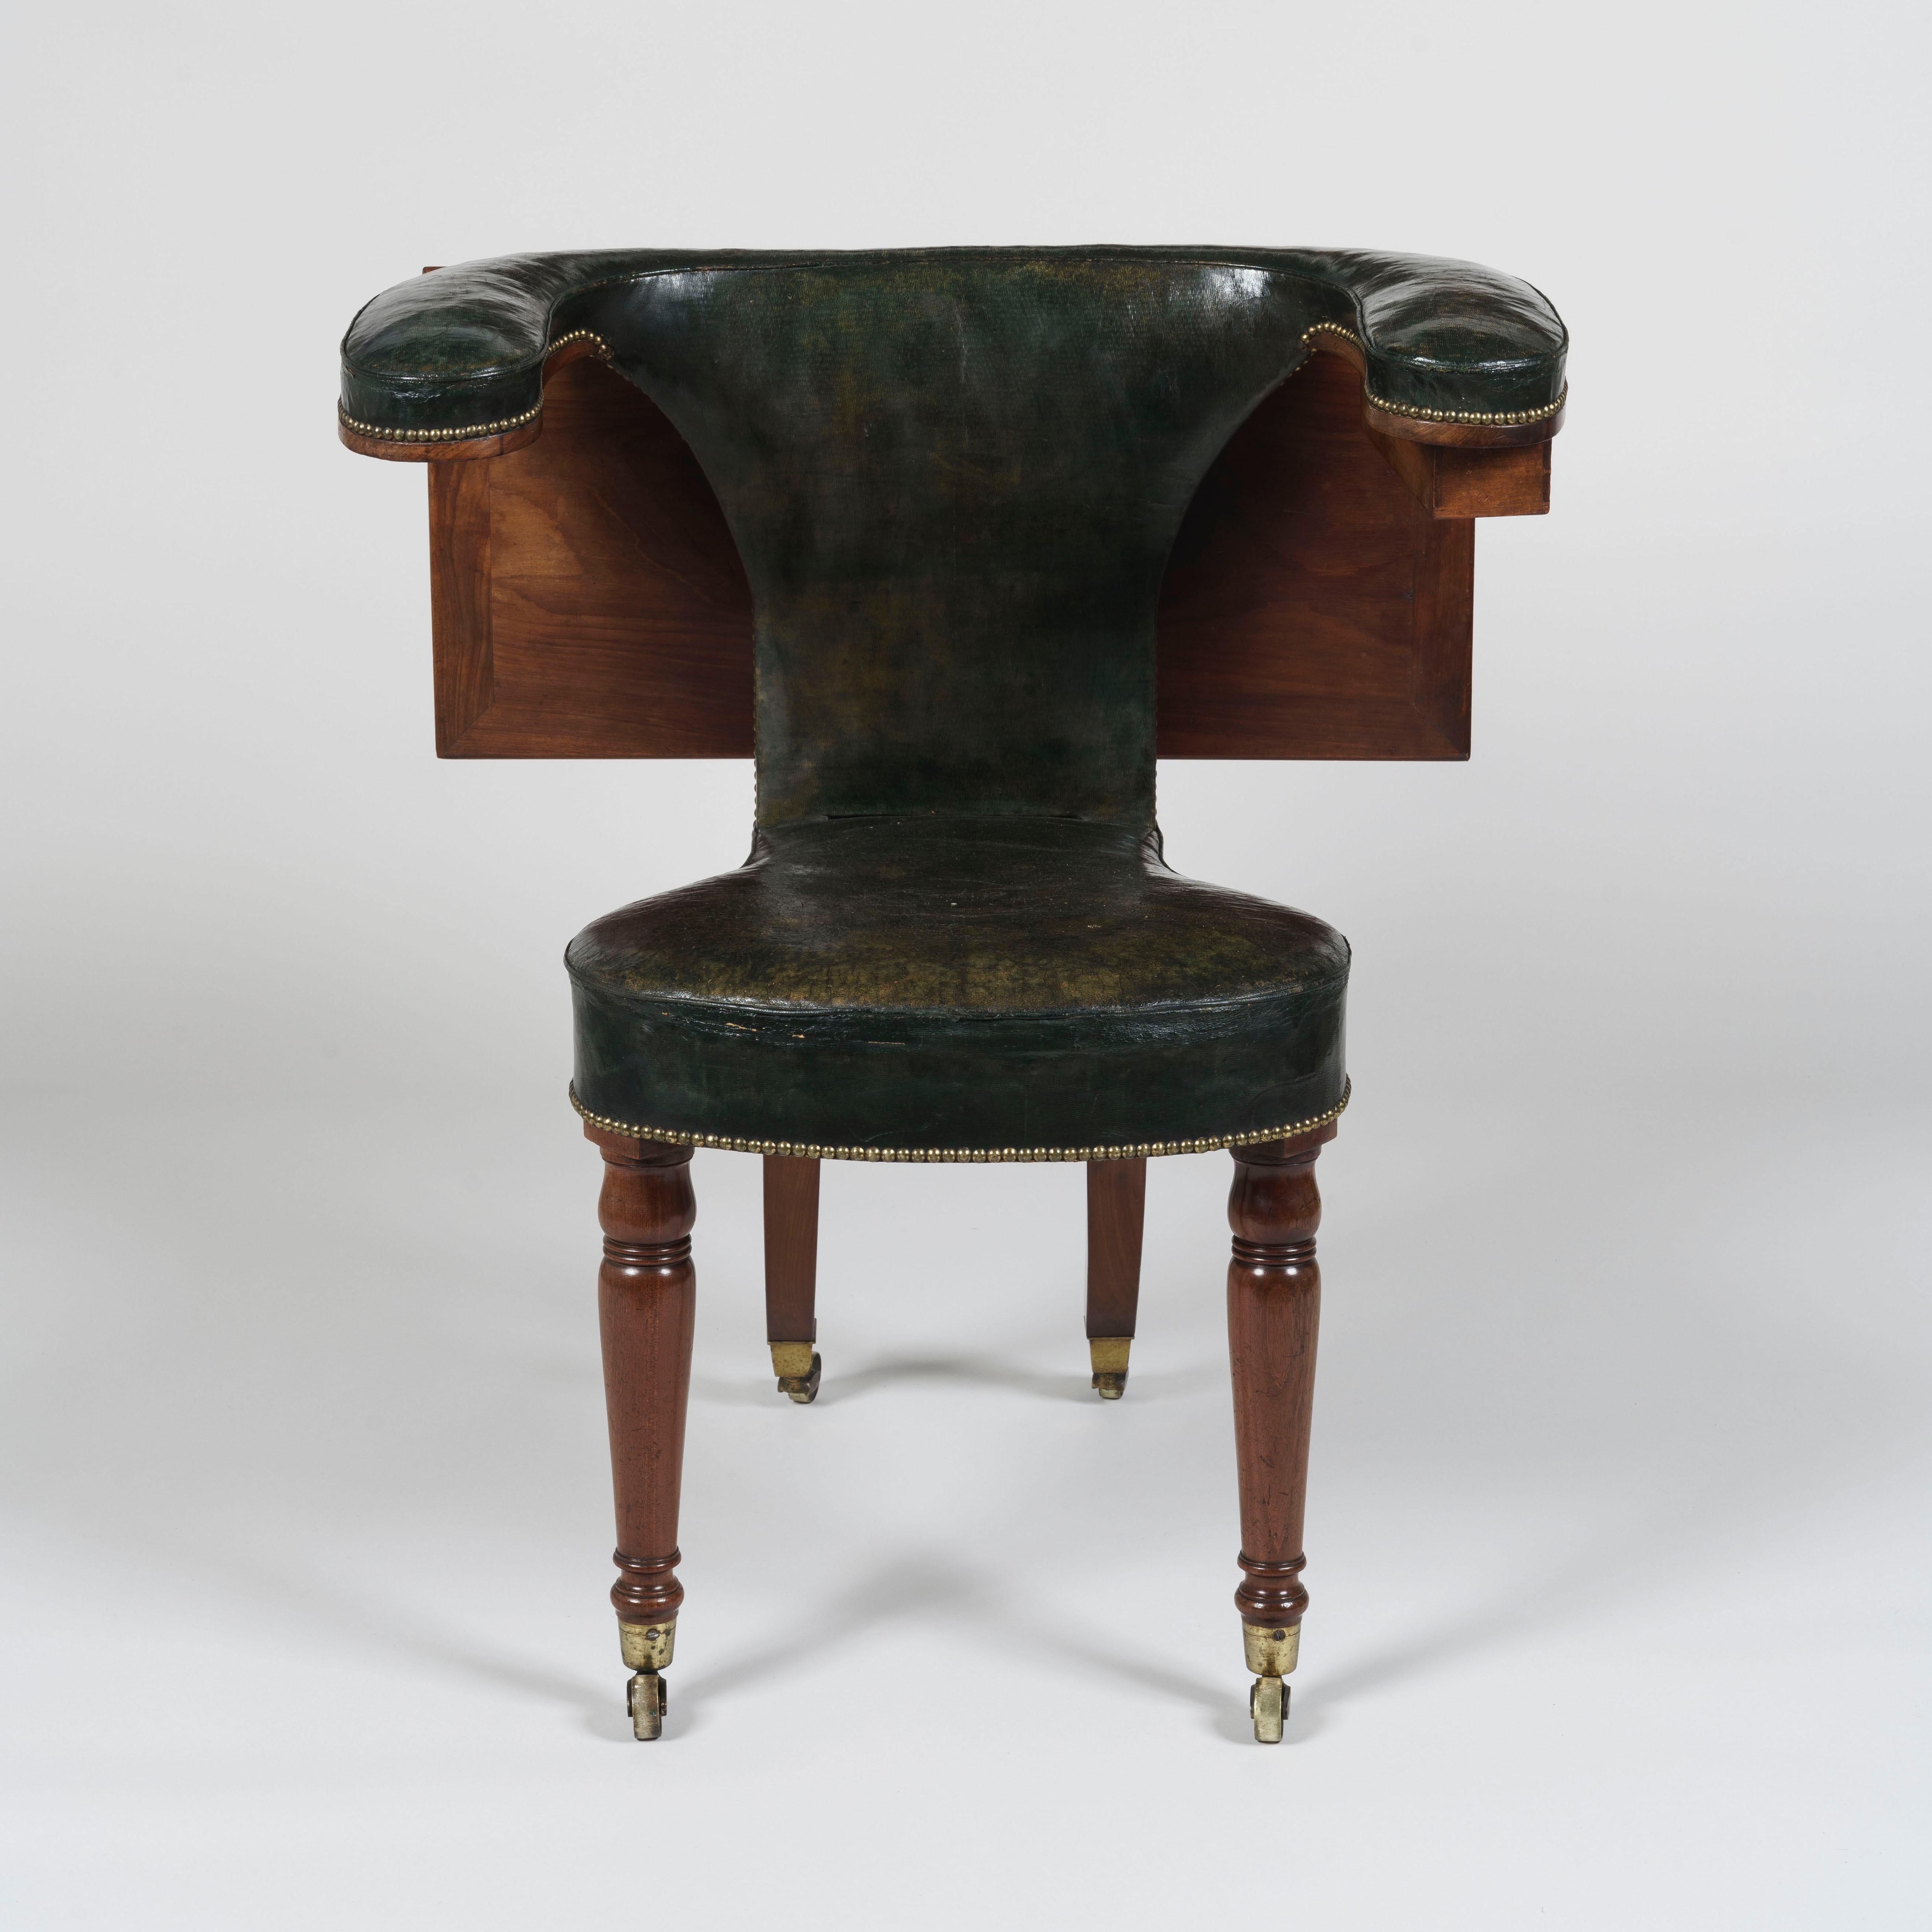 Une chaise de lecture en acajou
D'après un dessin de Thomas Sheraton

De conception très remarquable, la chaise en acajou avec son revêtement en cuir d'origine a des pieds avant tournés et effilés à roulettes avec des pieds en sabre à l'arrière,